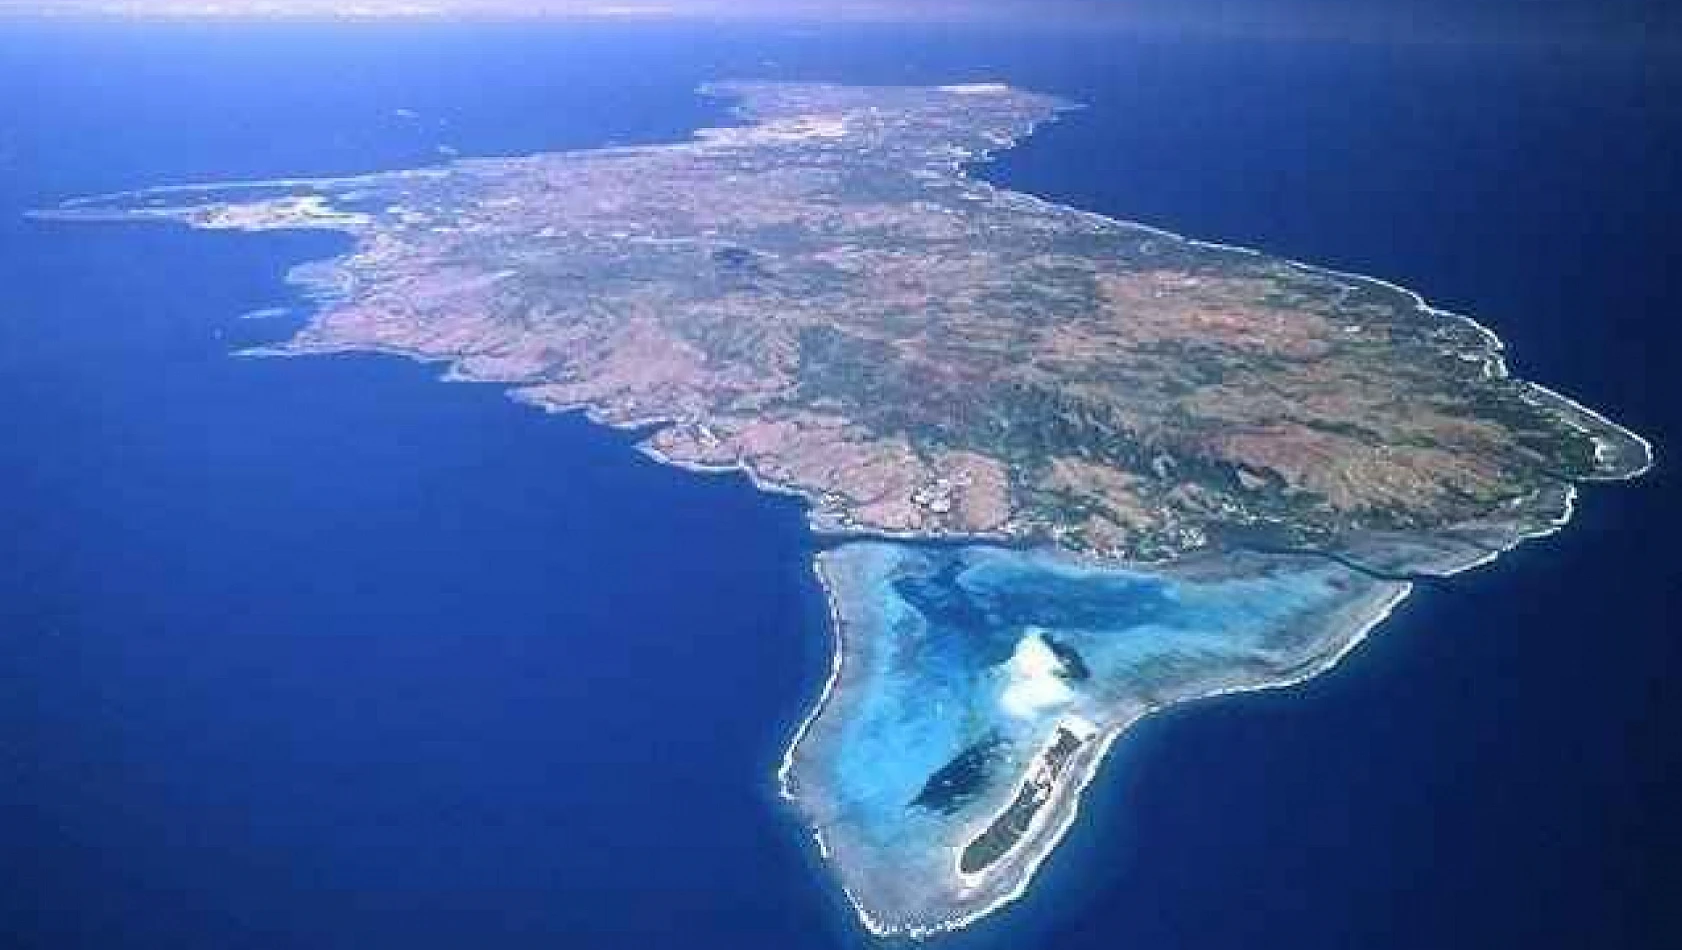 Pasifik cenneti Guam Adası, doğa ile buluşacağınız o adres...